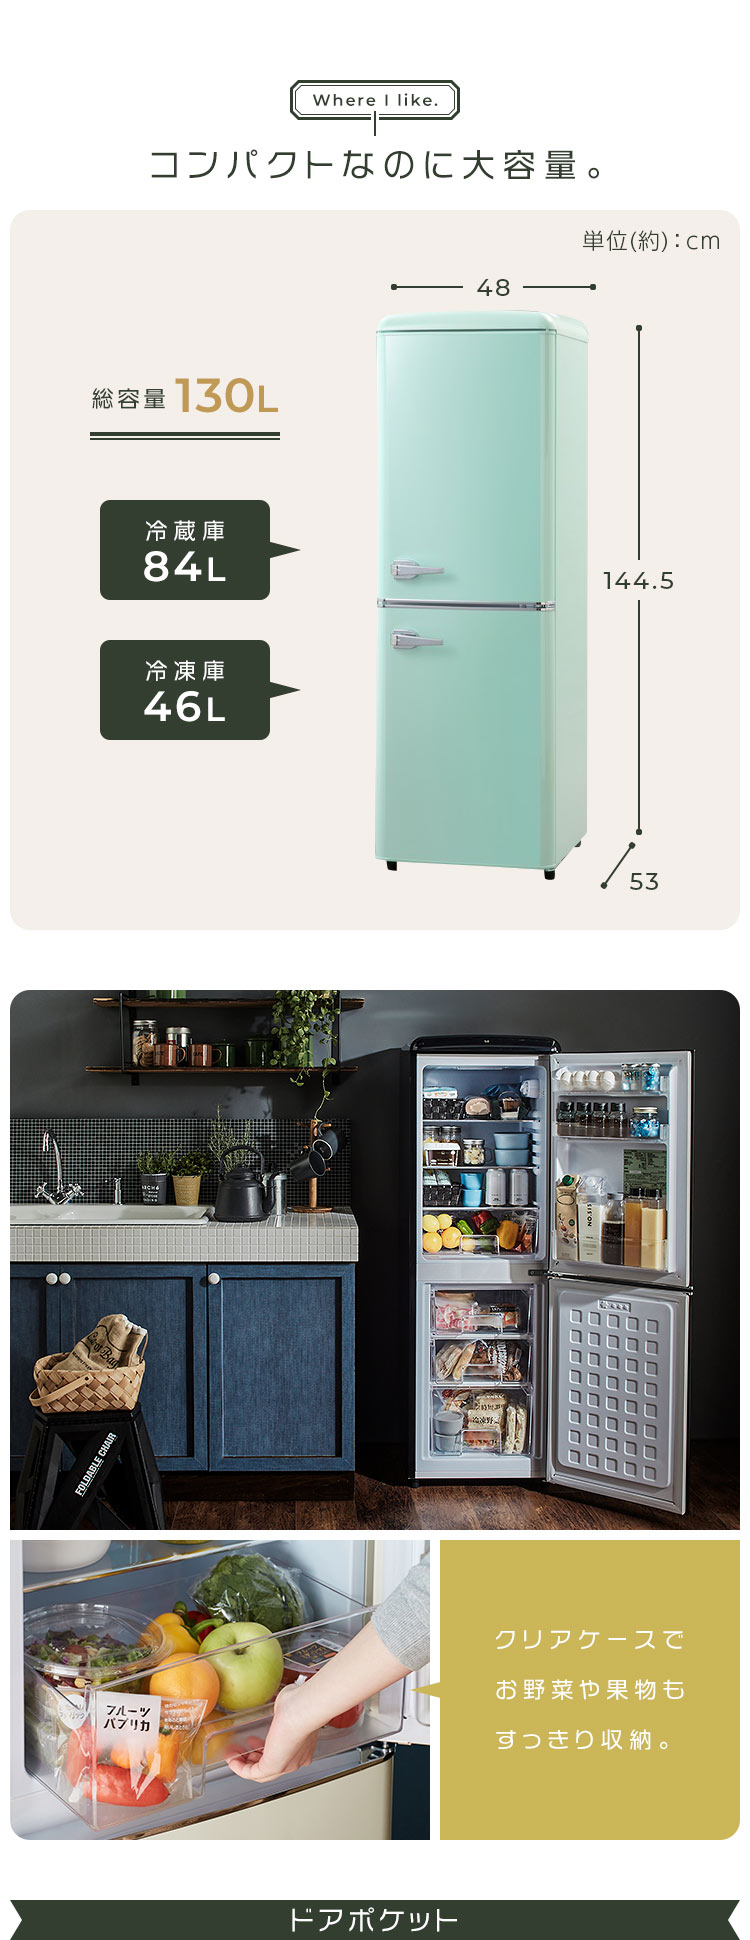 冷蔵庫 一人暮らし 二人暮らし レトロ 冷凍庫 2ドア冷蔵庫 2ドア 